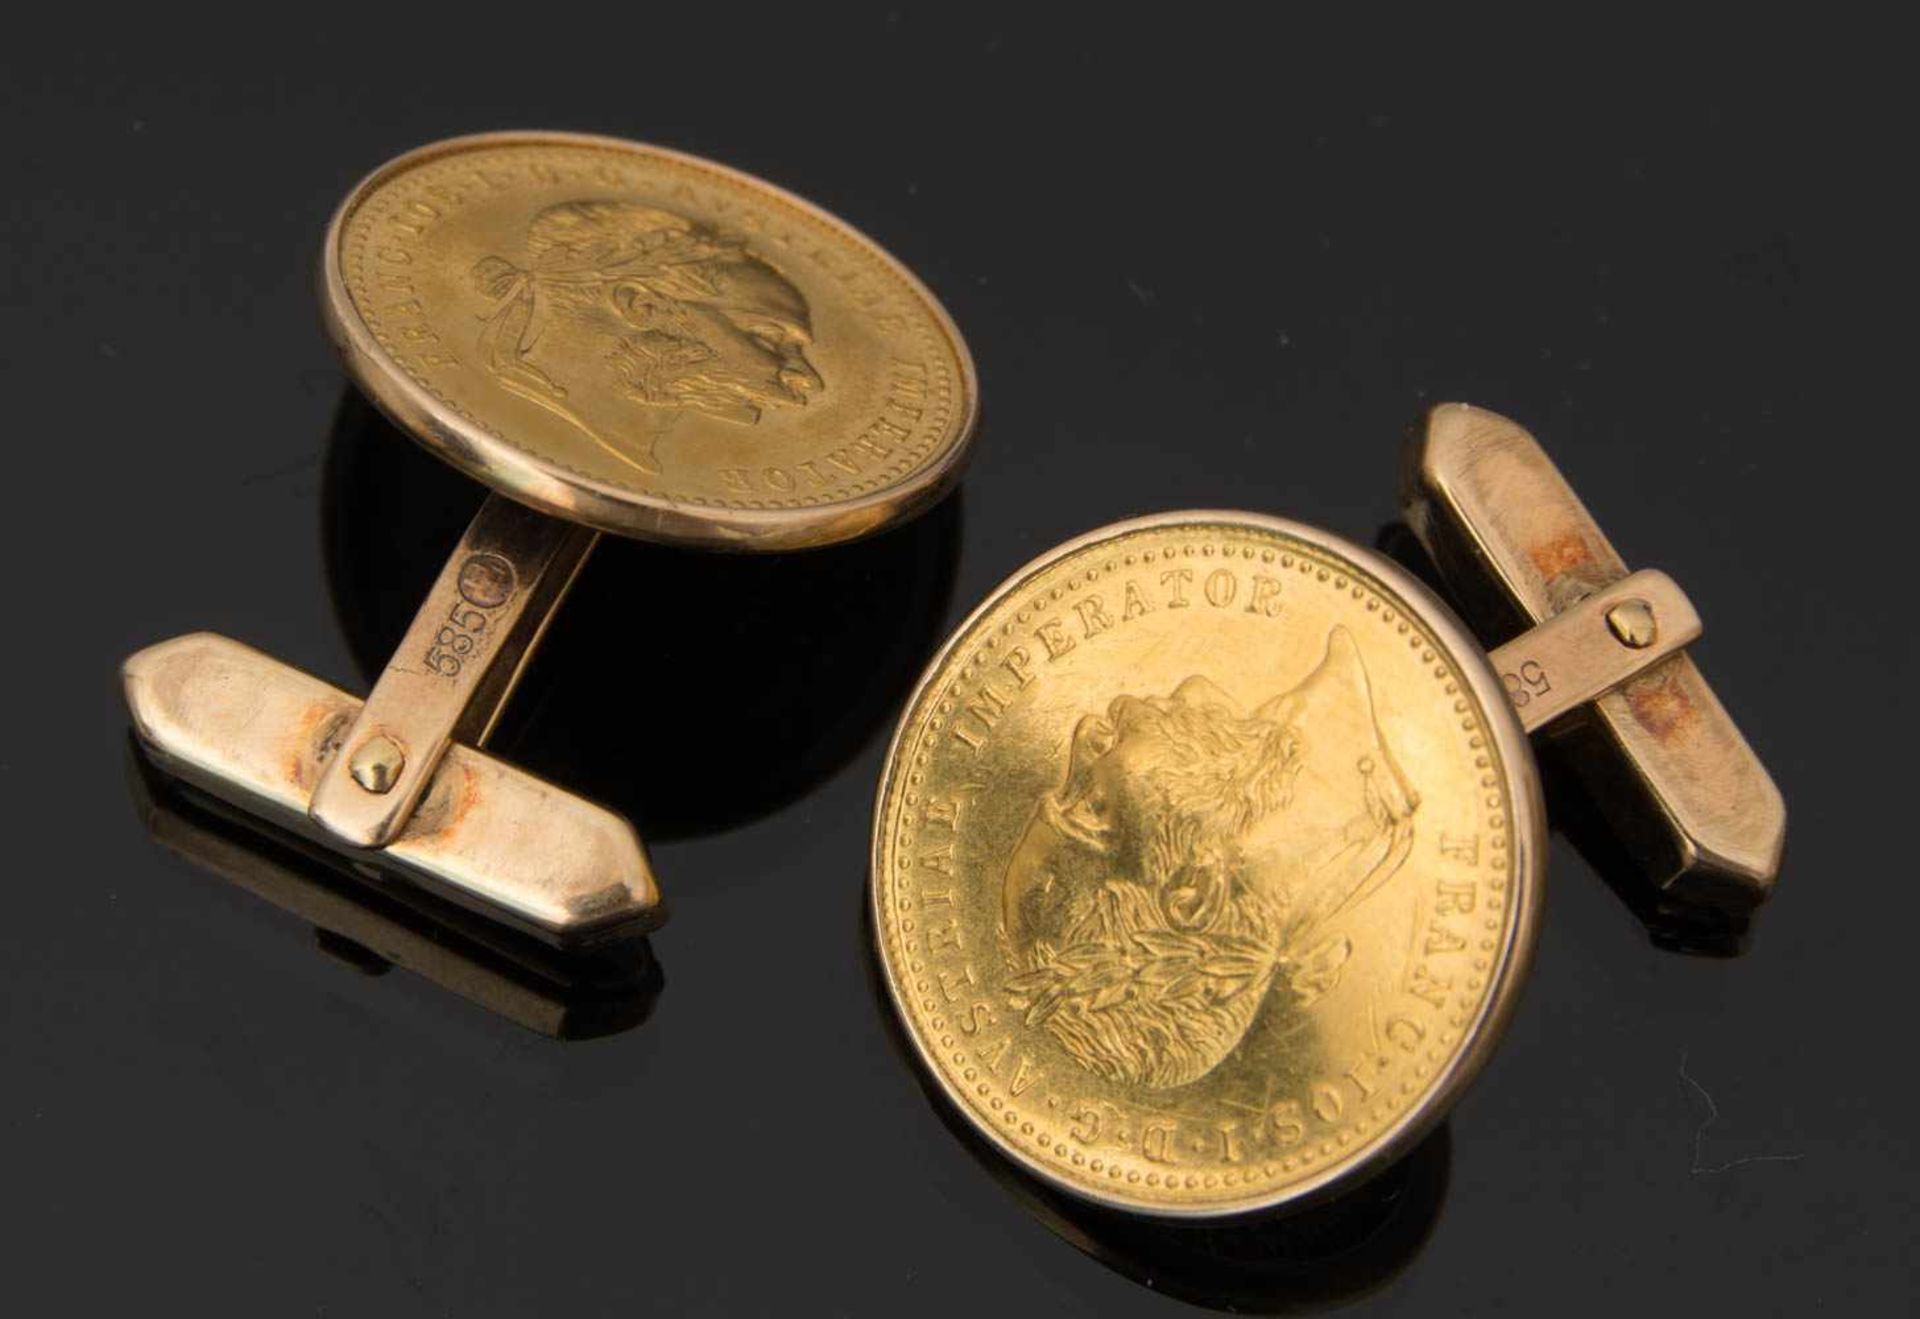 MÜNZEN MANSCHETTENKNÖPFE, 14k GelbgoldManschettenknöpfe mit eingefassten, österreichischen 10 Kronen